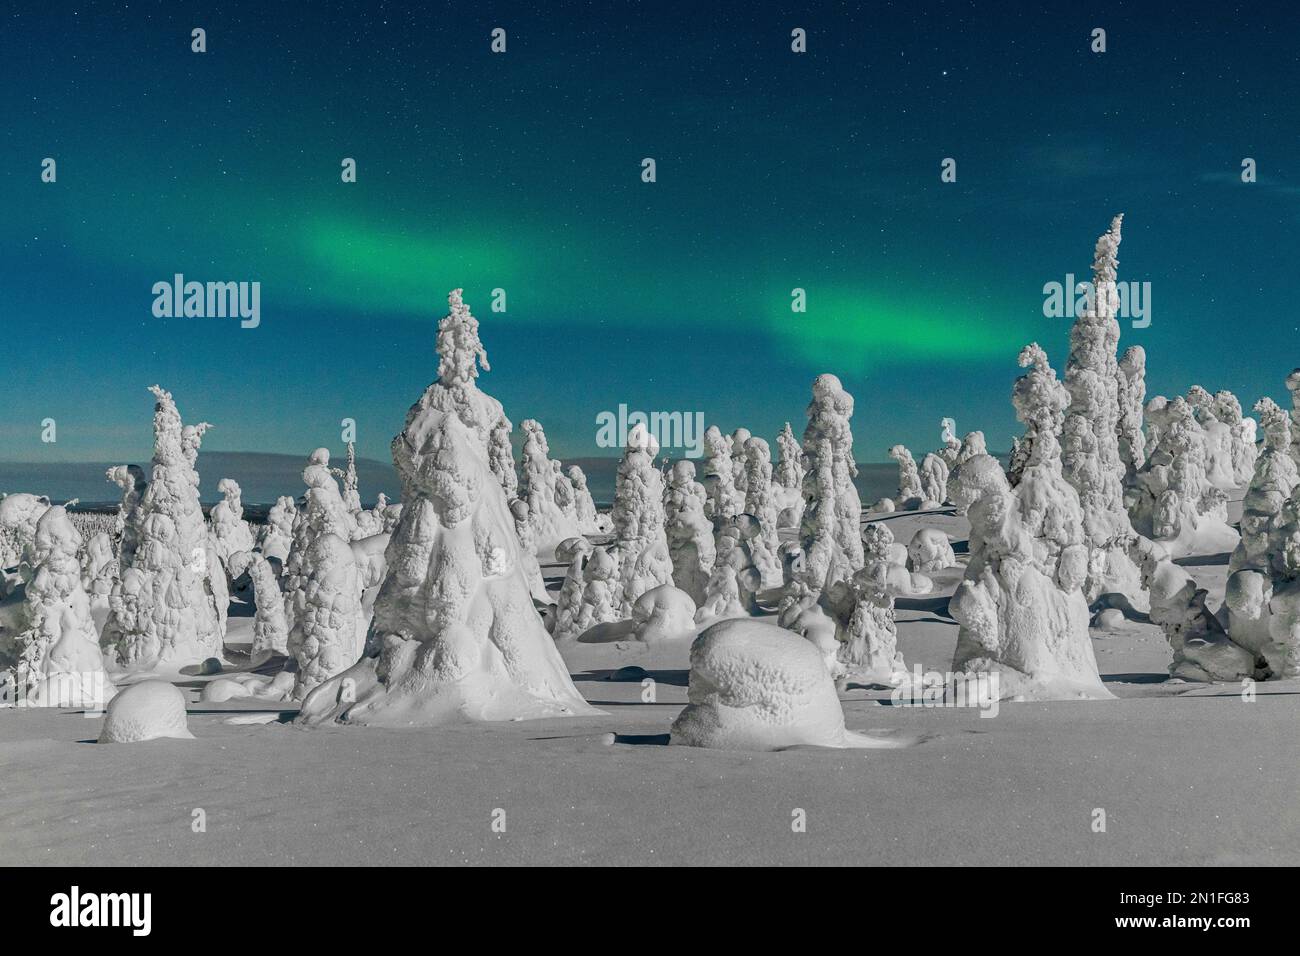 Gefrorene Bäume des arktischen Waldes, beleuchtet durch das grüne Licht der Aurora borealis (Nordlichter), Riisitunturi Nationalpark, Posio, Lappland, Finnland Stockfoto